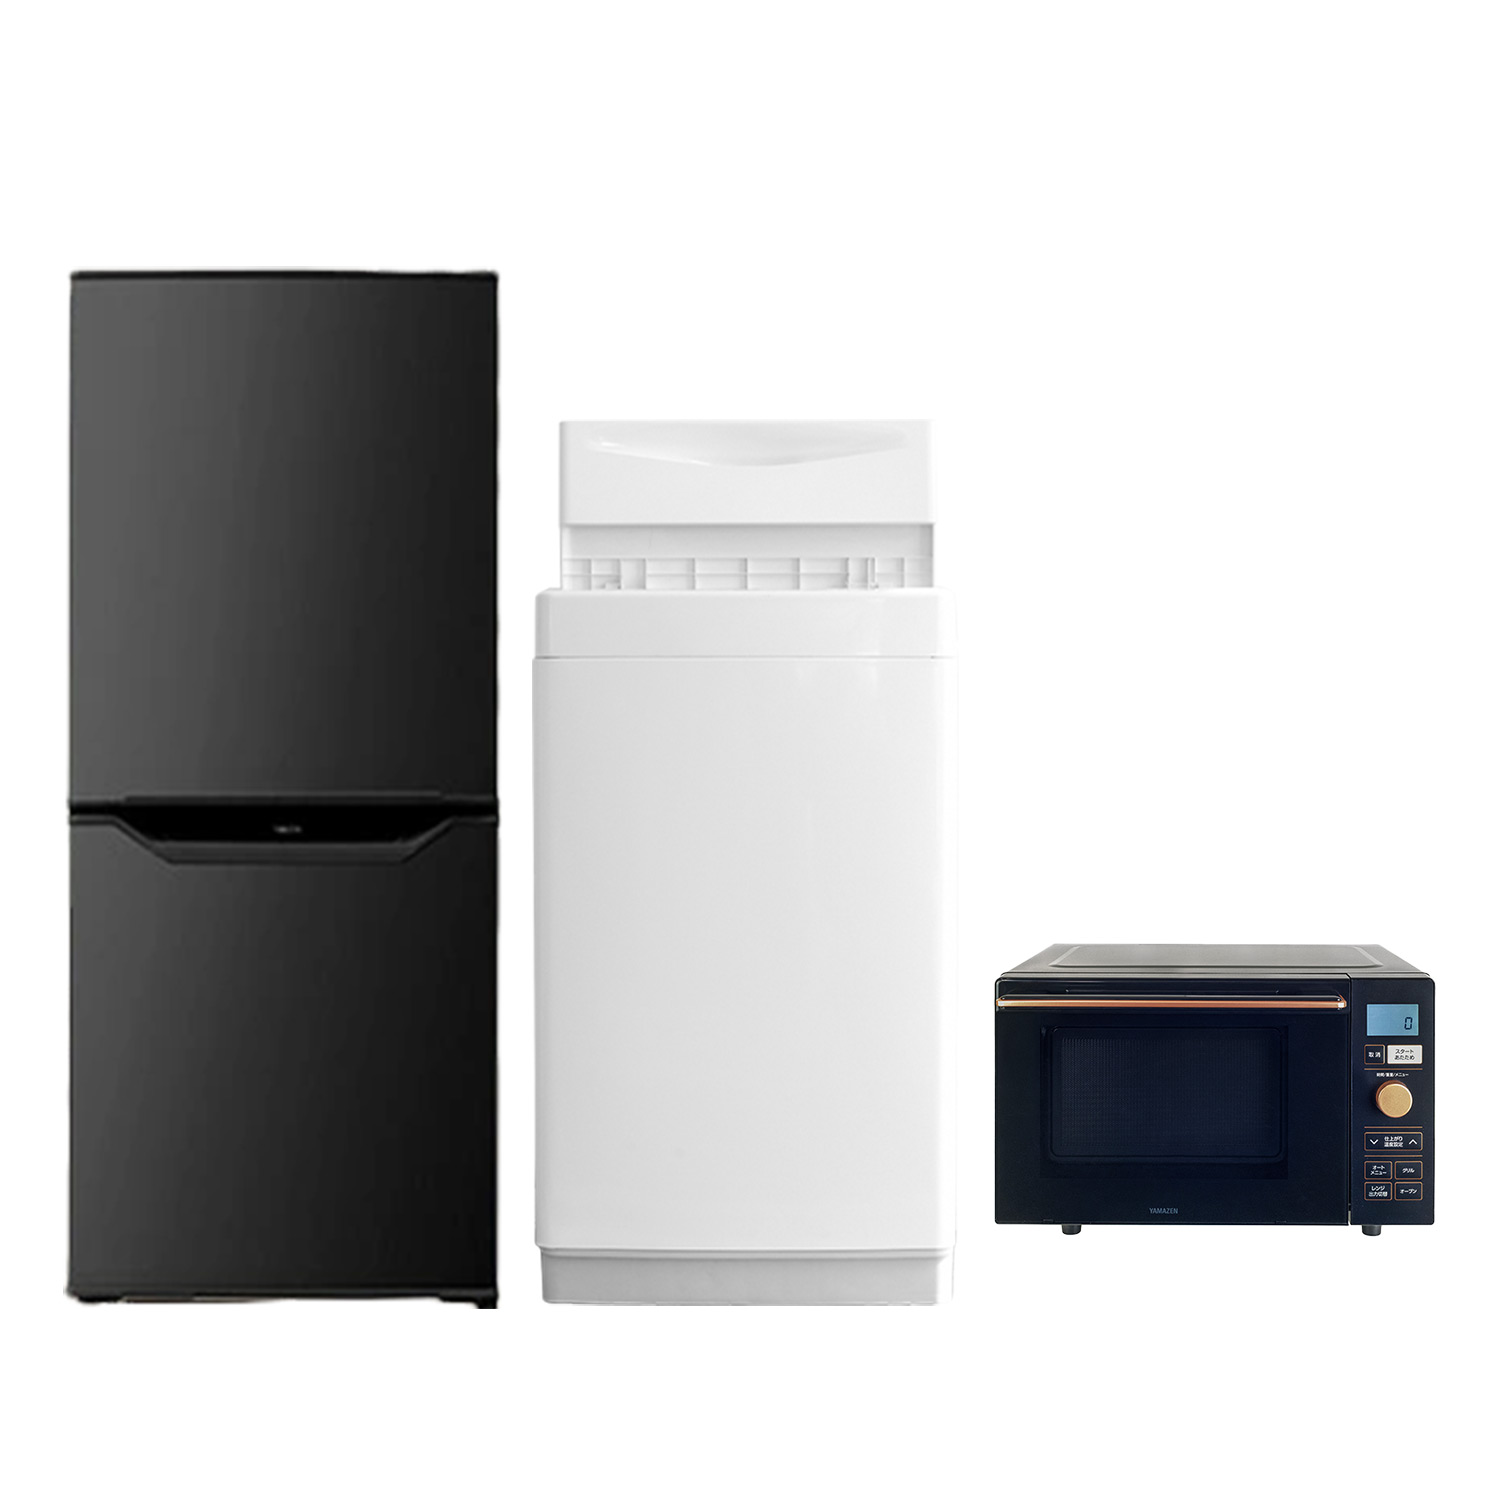 新品在庫あ生活家電 3点セット 冷蔵庫 洗濯機 オーブンレンジ ひとり暮らし E218 冷蔵庫・冷凍庫